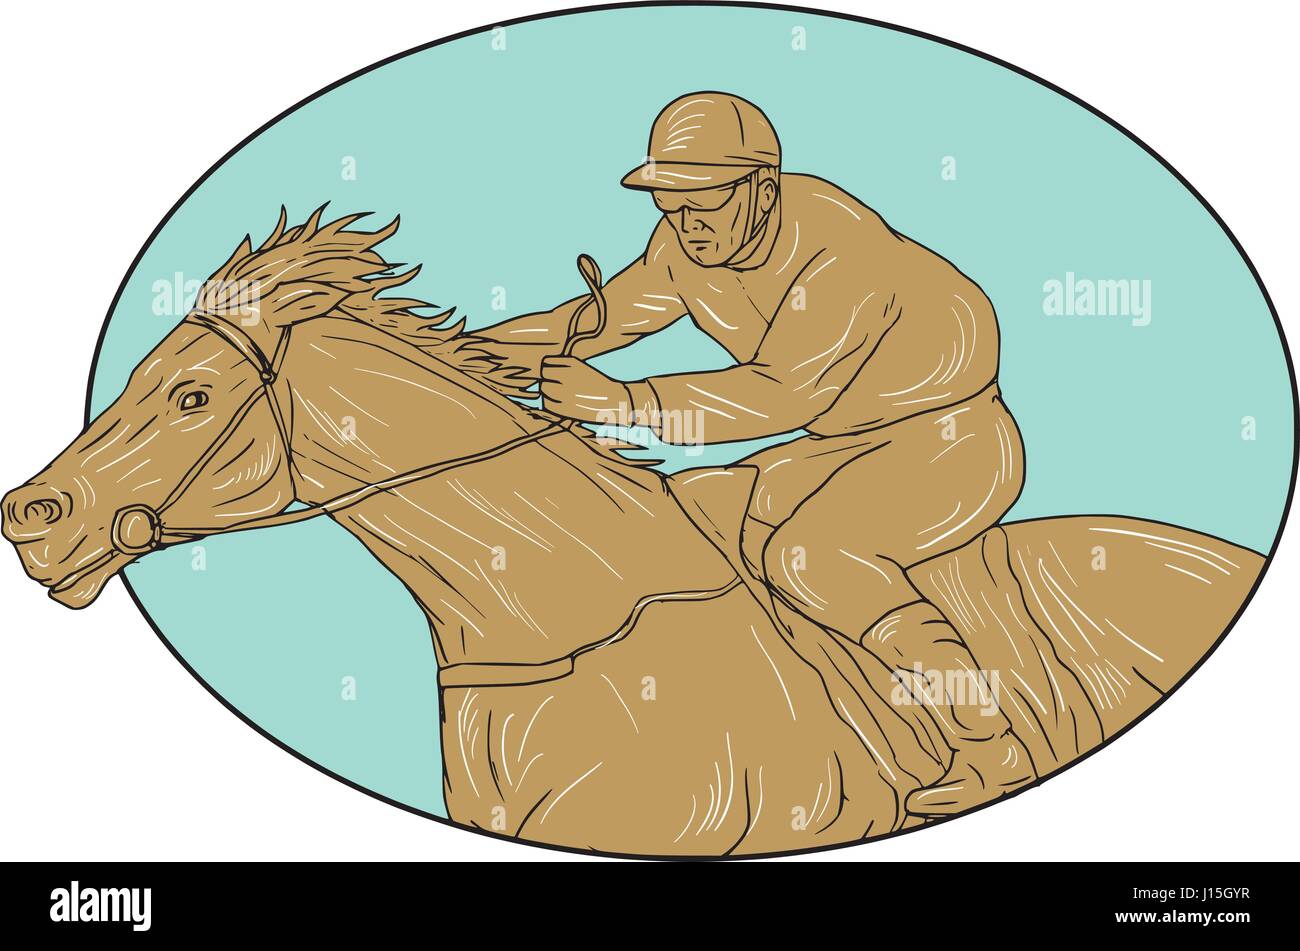 Croquis dessin illustration style de horse and jockey racing vu du côté situé à l''intérieur de la forme ovale sur fond isolé. Illustration de Vecteur